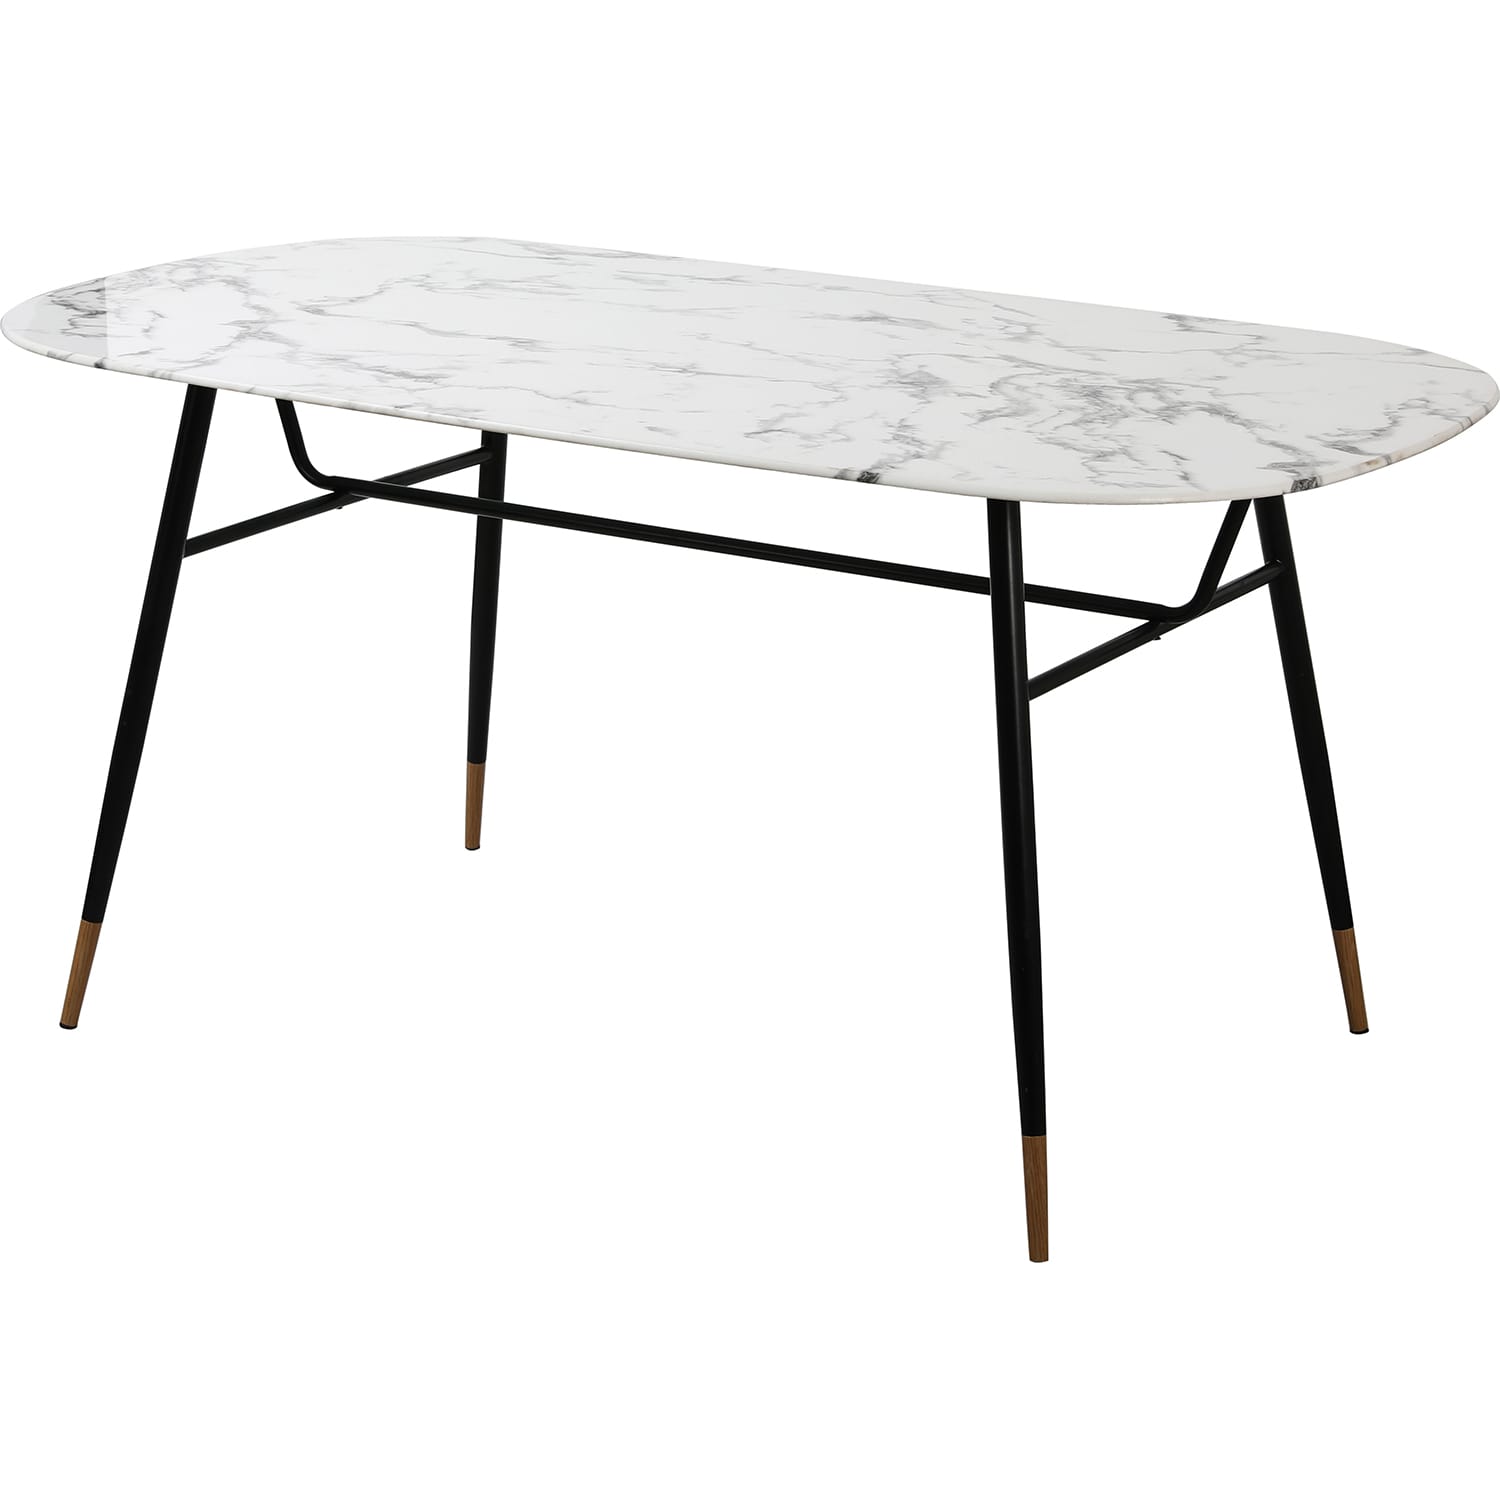 Tisch weiss | Esstische mutoni | | möbel 160 Glastische | Tische Möbel | Metall Glas